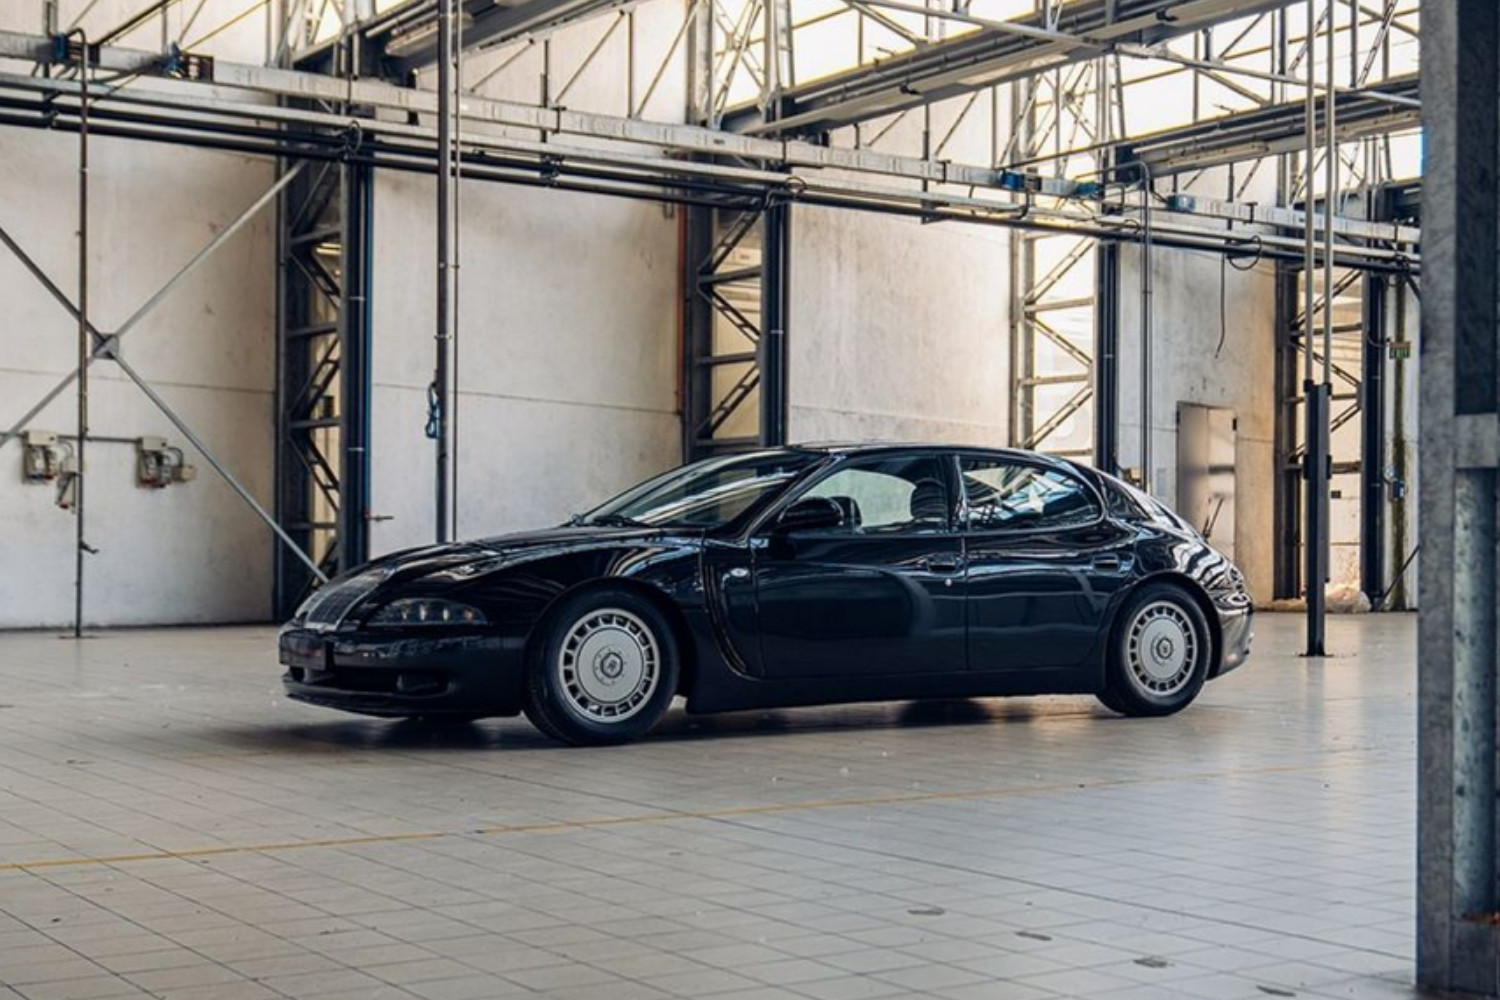 Graças a um V12 fornecido pela Volkswagen, o EB112 consegue acelerar dos 0 aos 100 km/h em apenas 4,4s